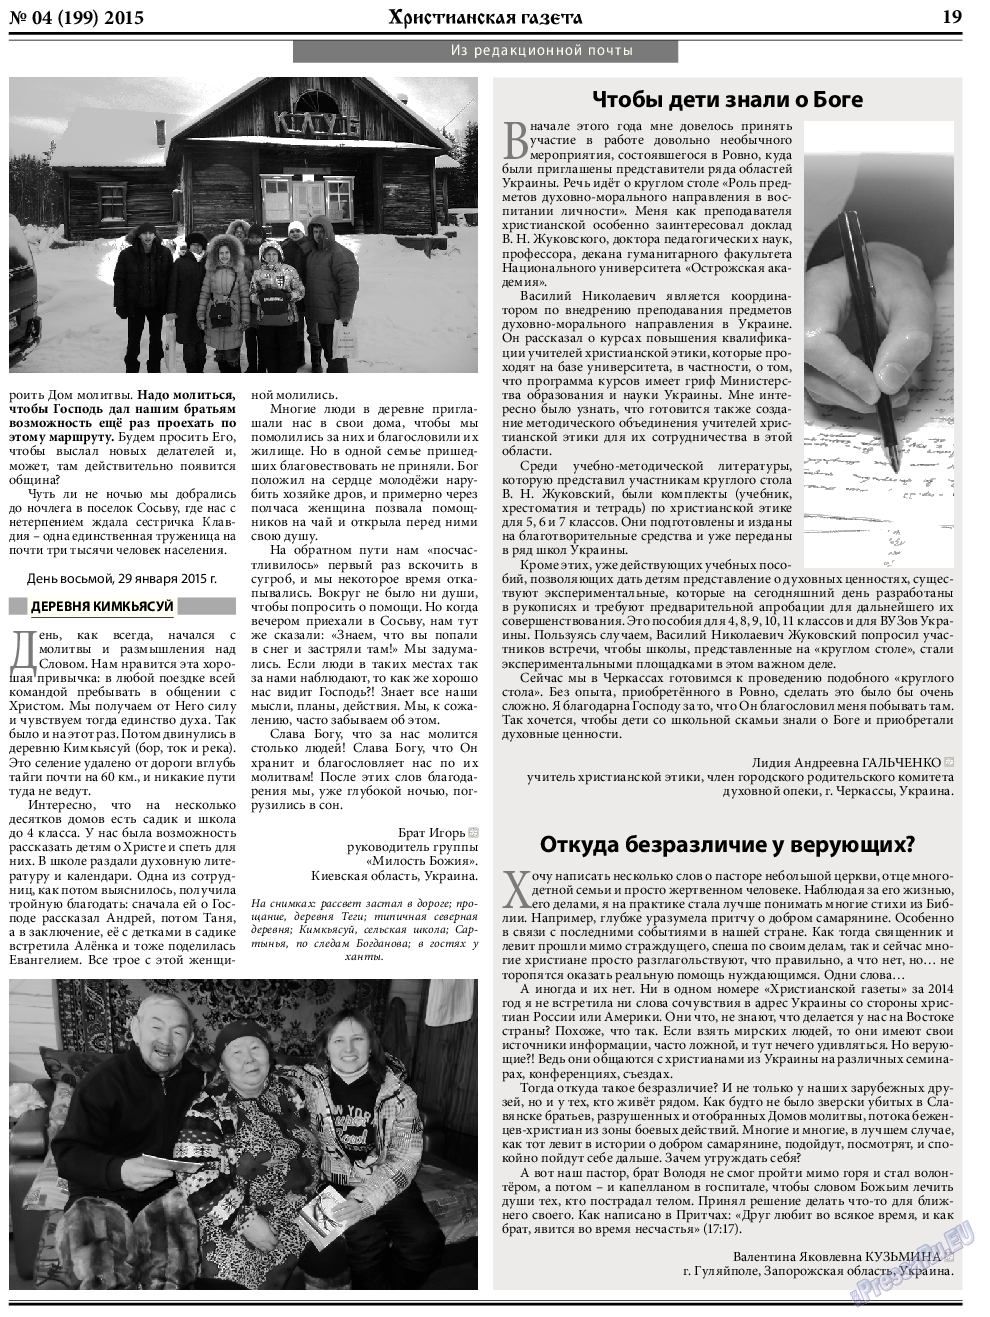 Христианская газета, газета. 2015 №4 стр.27